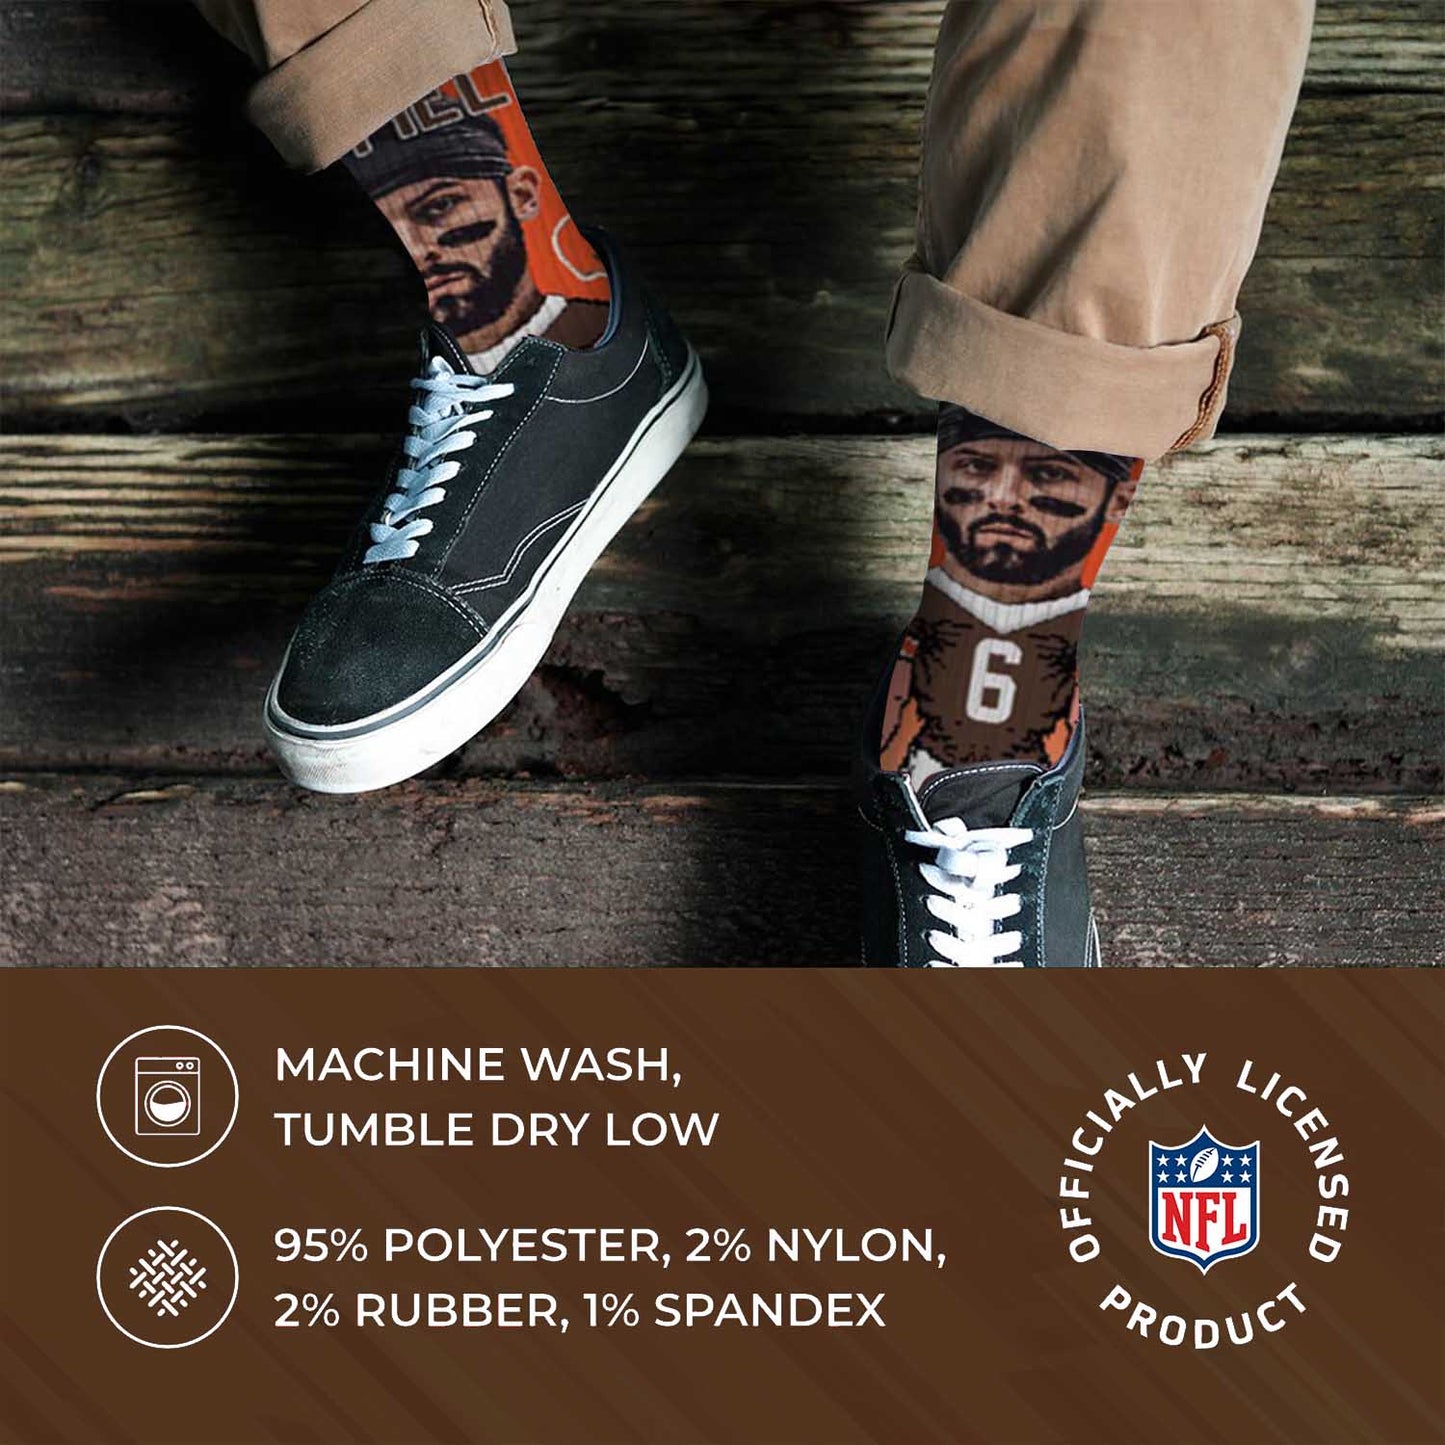 Cleveland Browns FBF NFL Adult V Curve MVP Player Crew Socks - Orange #6